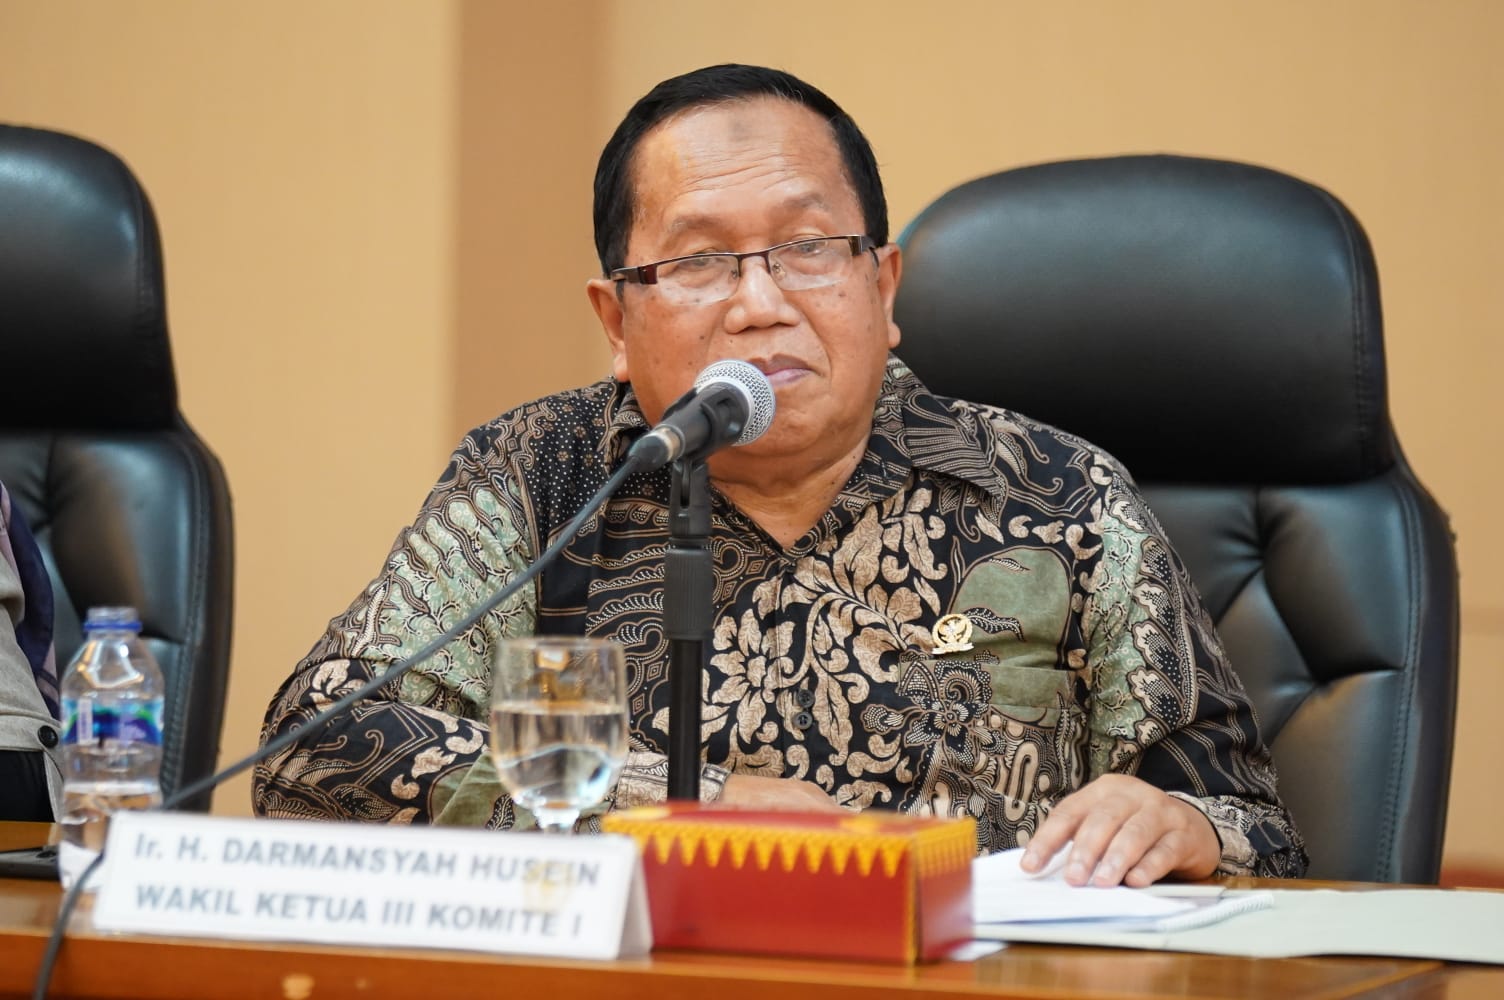 Kunker Komite I mencatat sejumlah Persoalan Konflik Pertanahan di Riau 